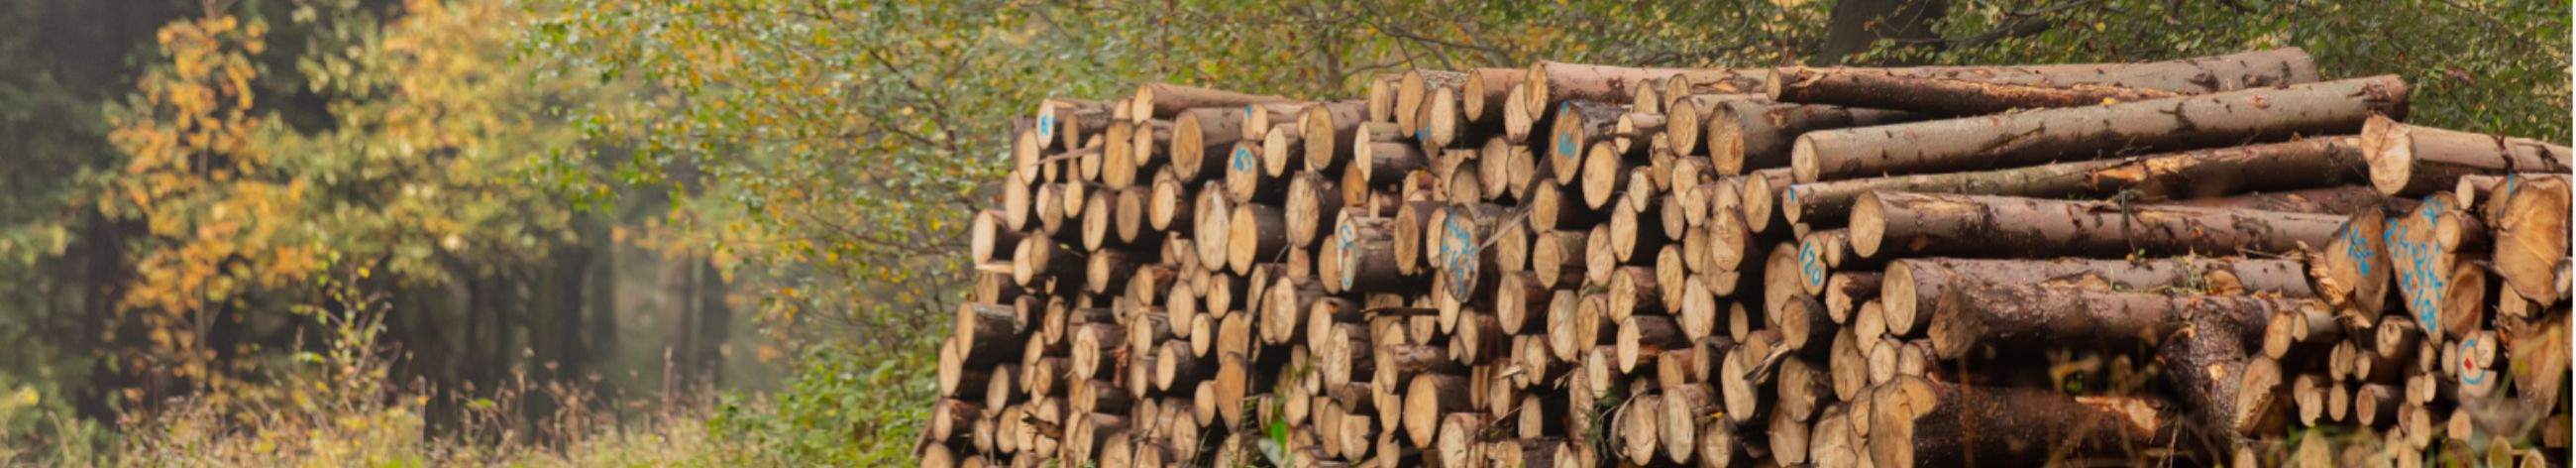 Tegeleme metsahoolduse ja metsamajandusega, aidates klientidel säilitada ja arendada oma metsamaad.